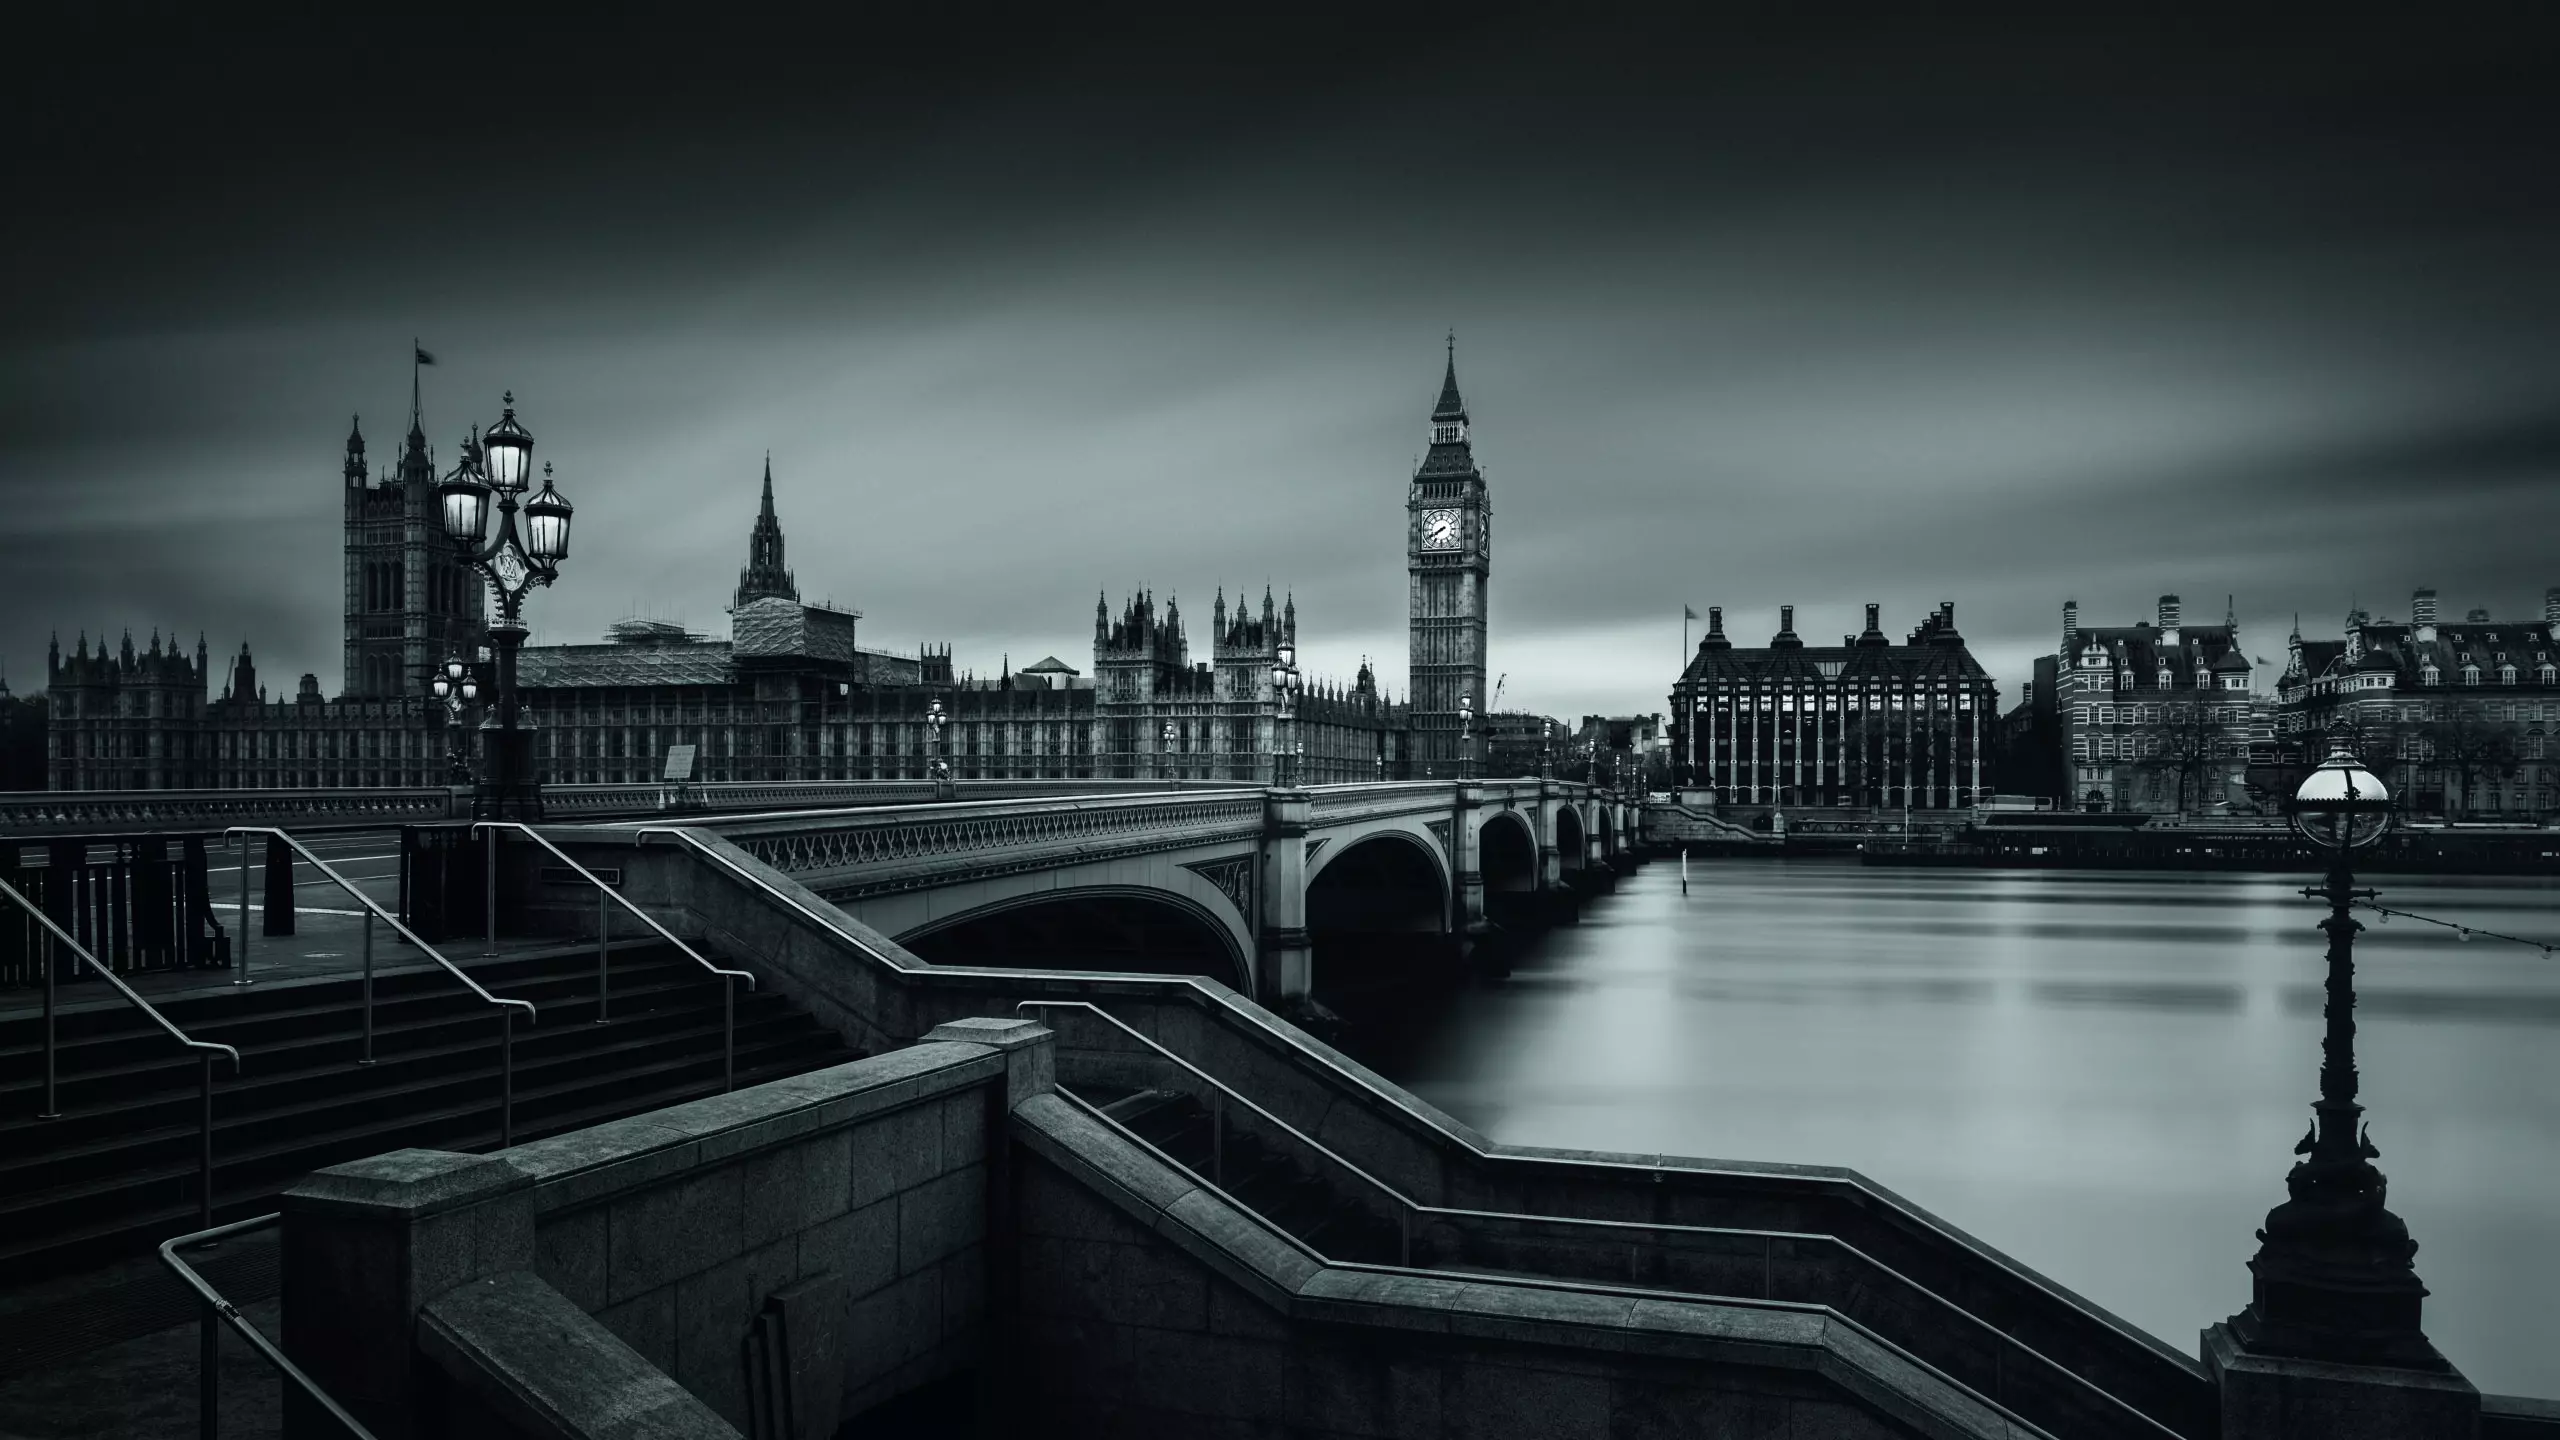 Wandbild (5846) Westminster Bridge by Oscar Lopez, 1x.com präsentiert: Technik,Architektur,Häuser,Skylines,Sehenswürdigkeiten,Brücke